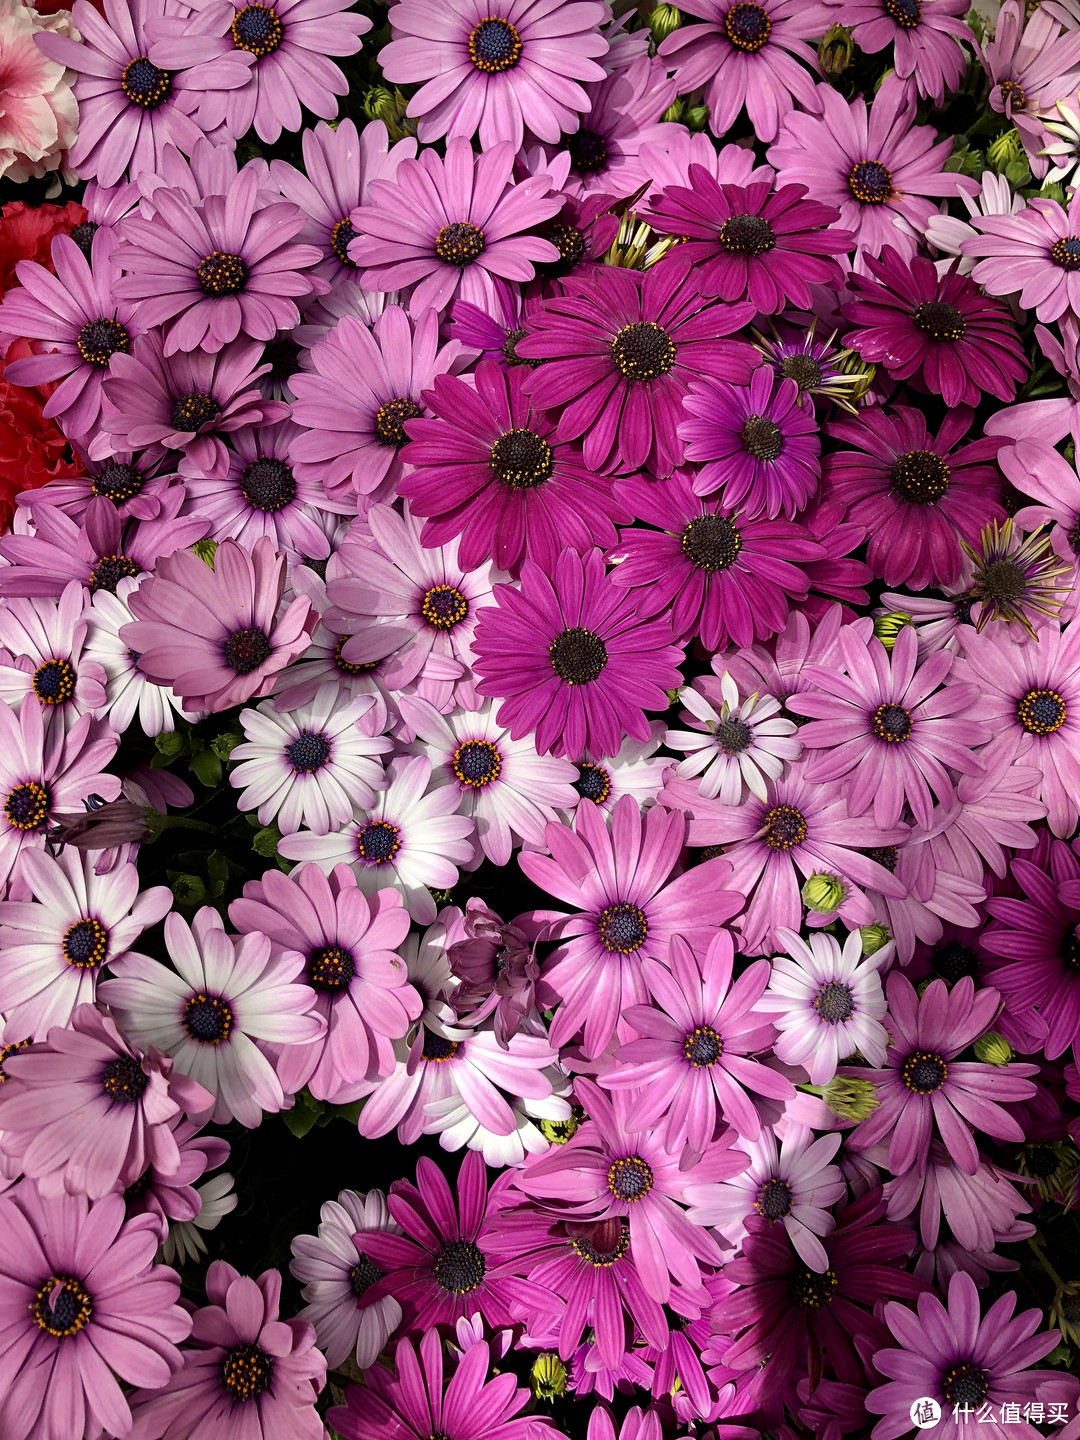 这是我在逛花卉市场,看到一家花商在地面上摆了一堆漂亮的花,我走过去